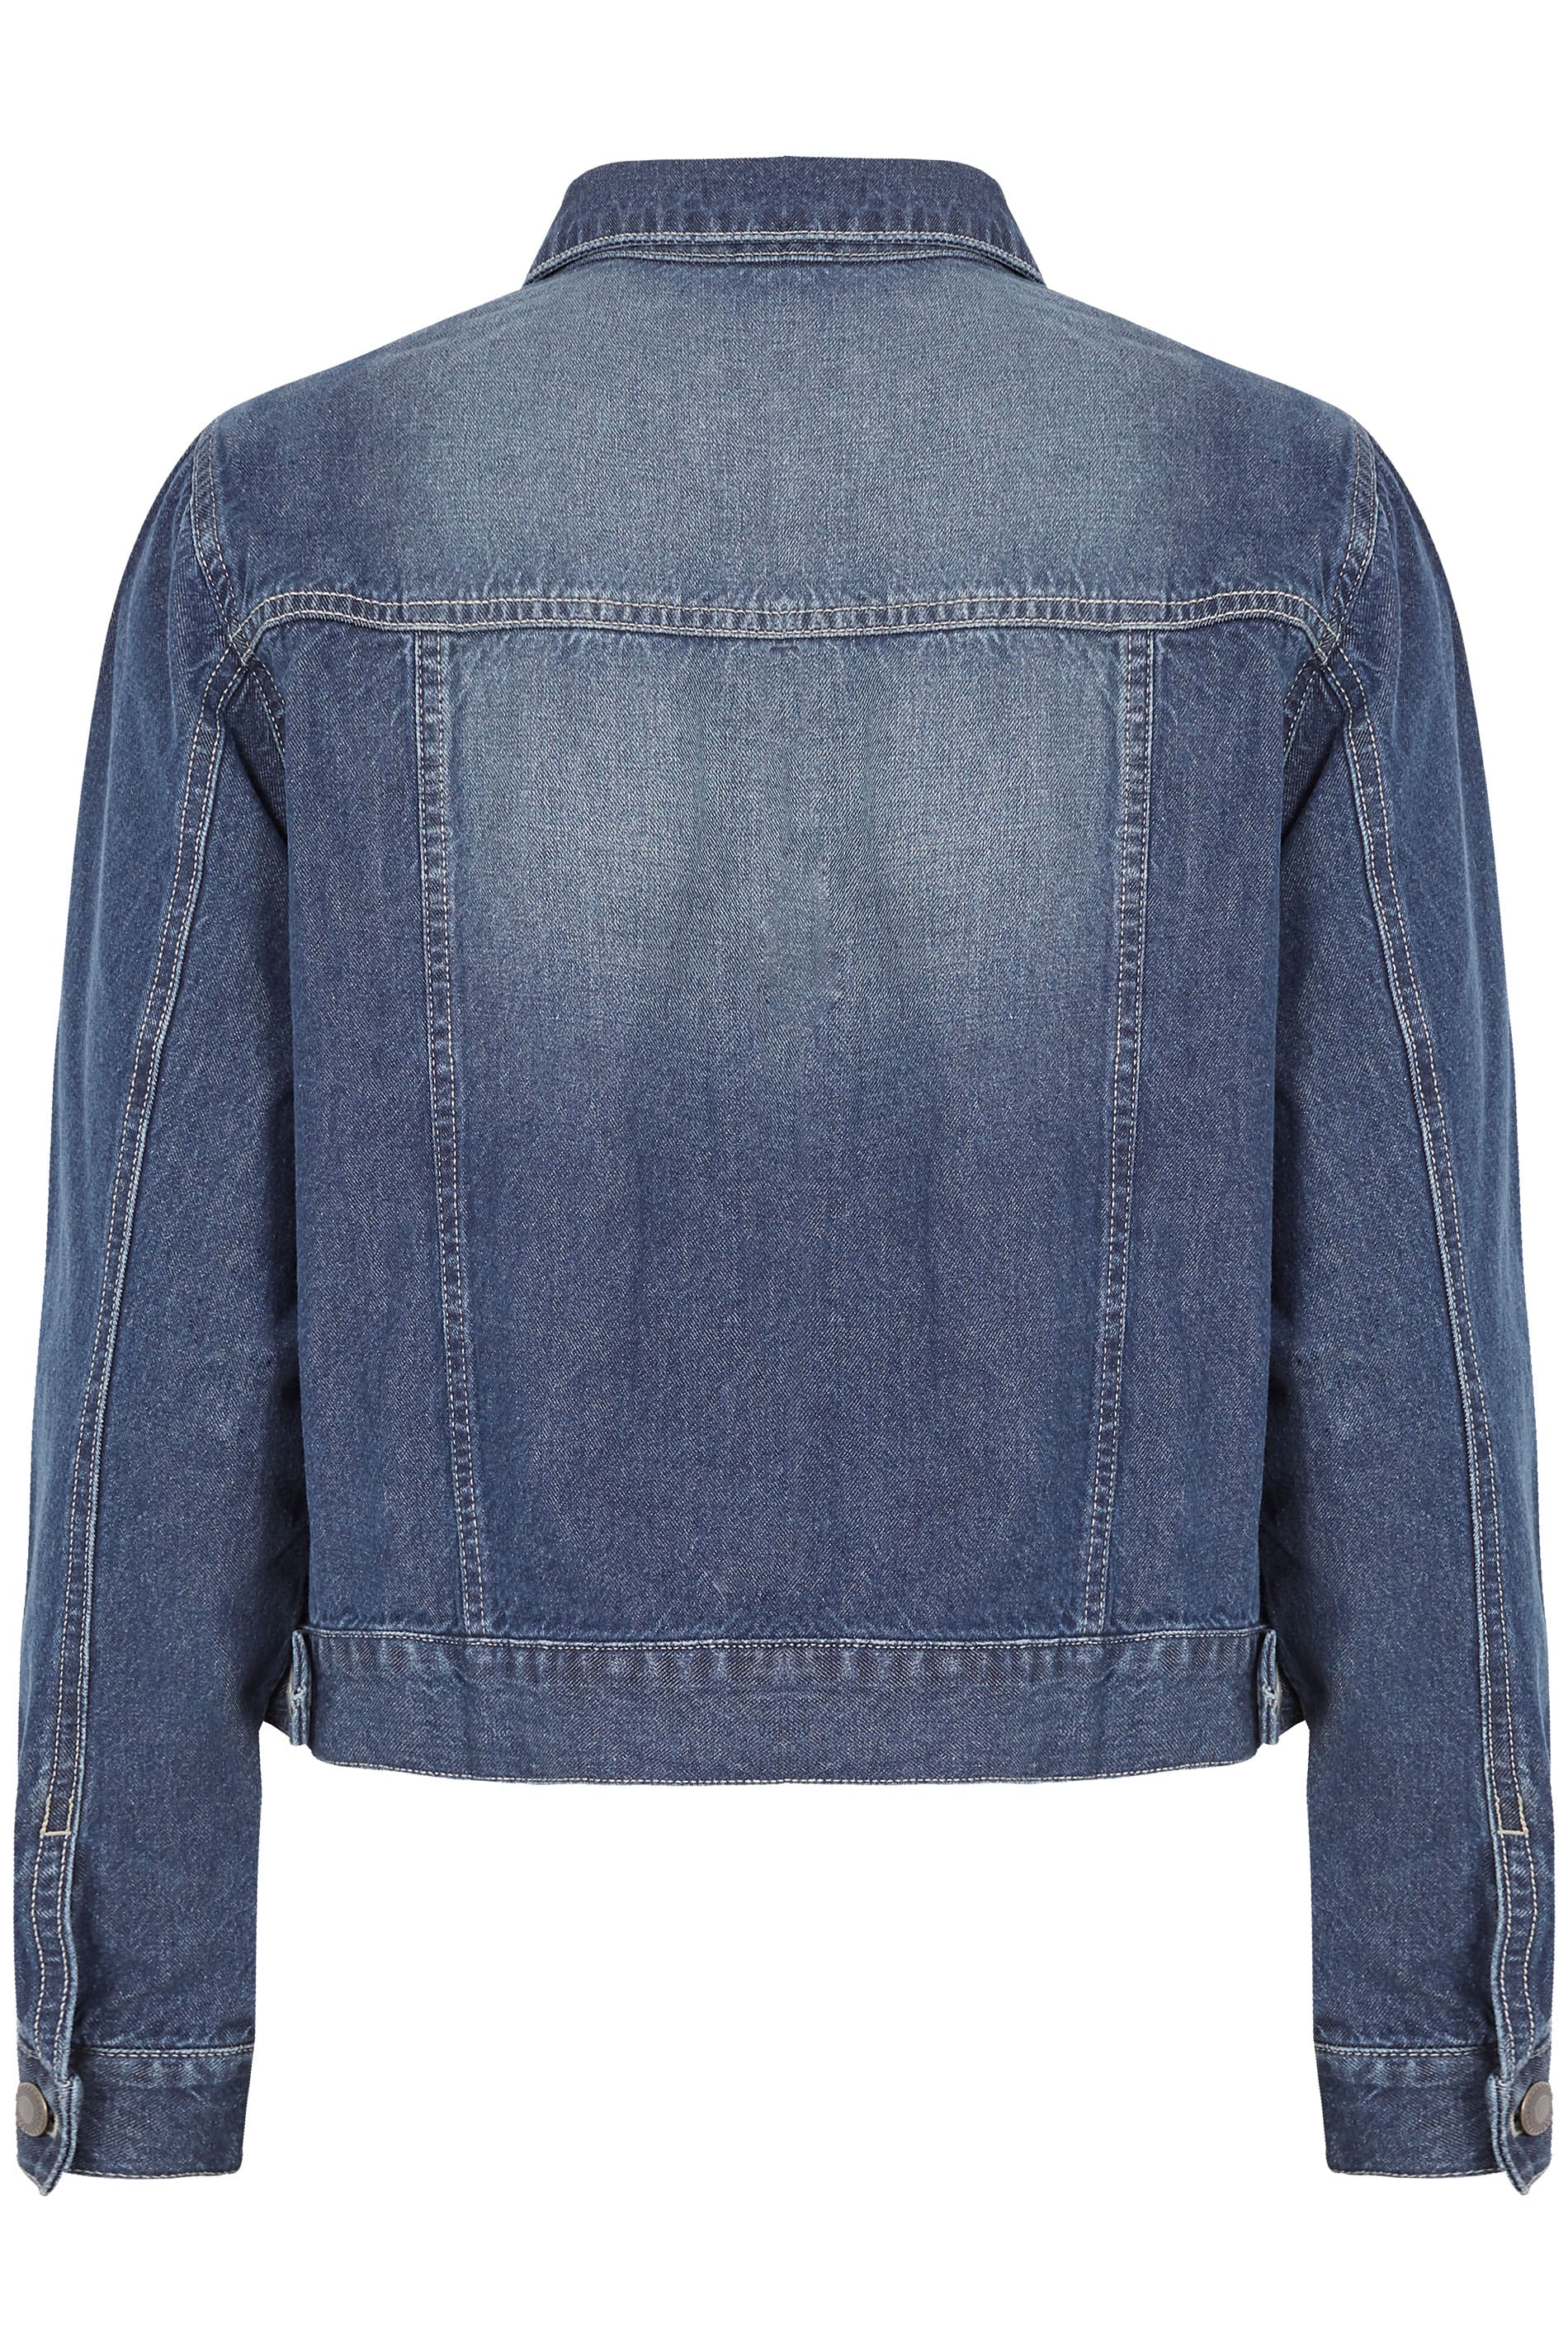 Plus Size Blue Denim Jacket | Sizes 16 to 36 | Yours Clothing